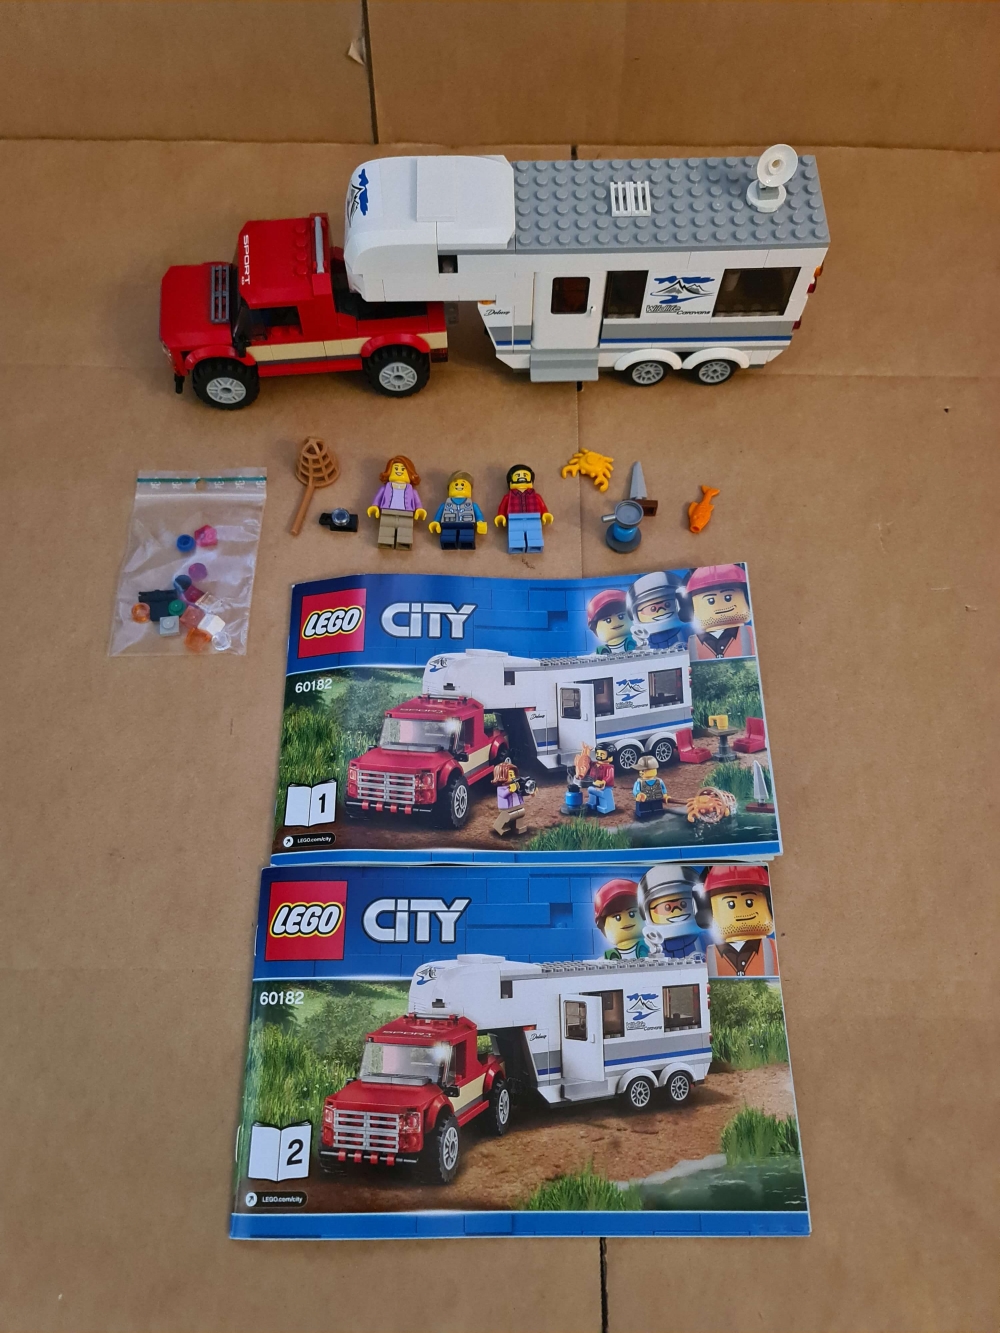 Sett 60182 fra Lego City serien.
Meget pent.
Komplett med manual og eske.